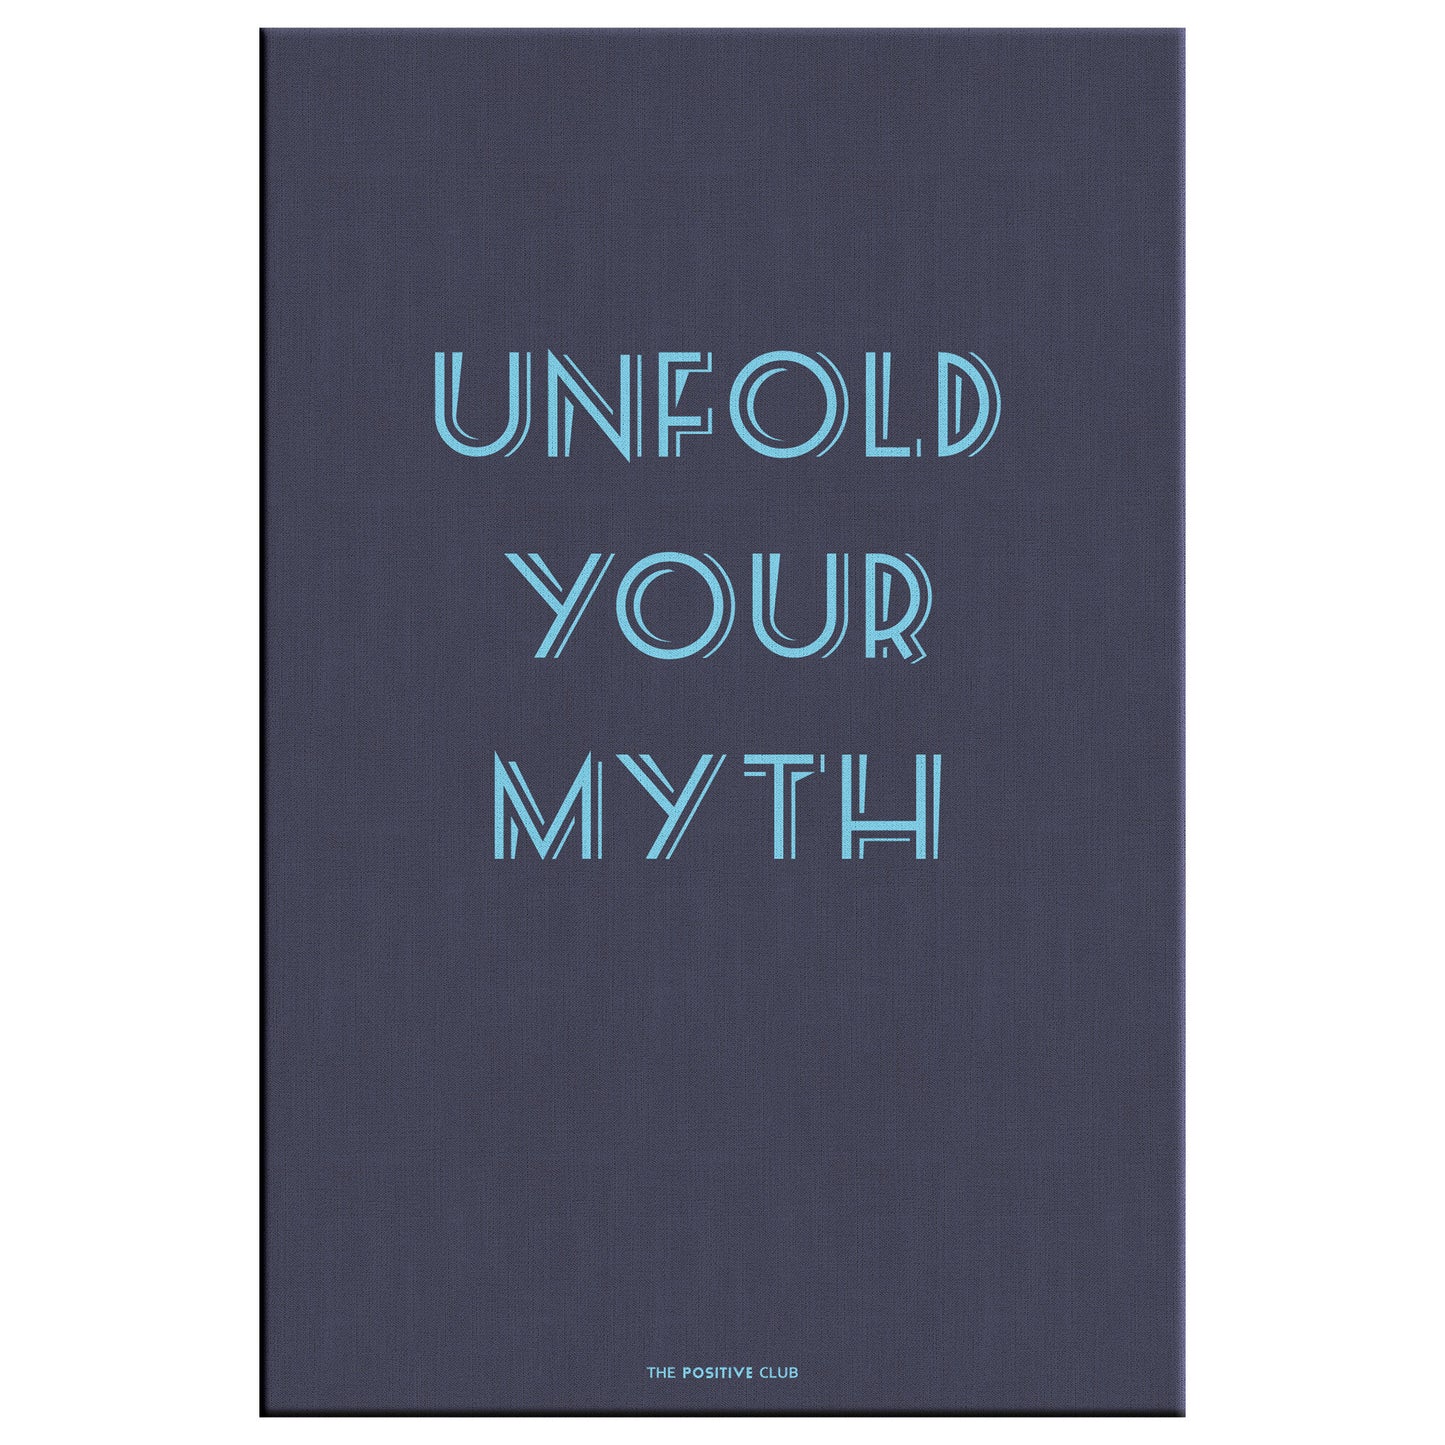 UNFOLD YOUR MYTH